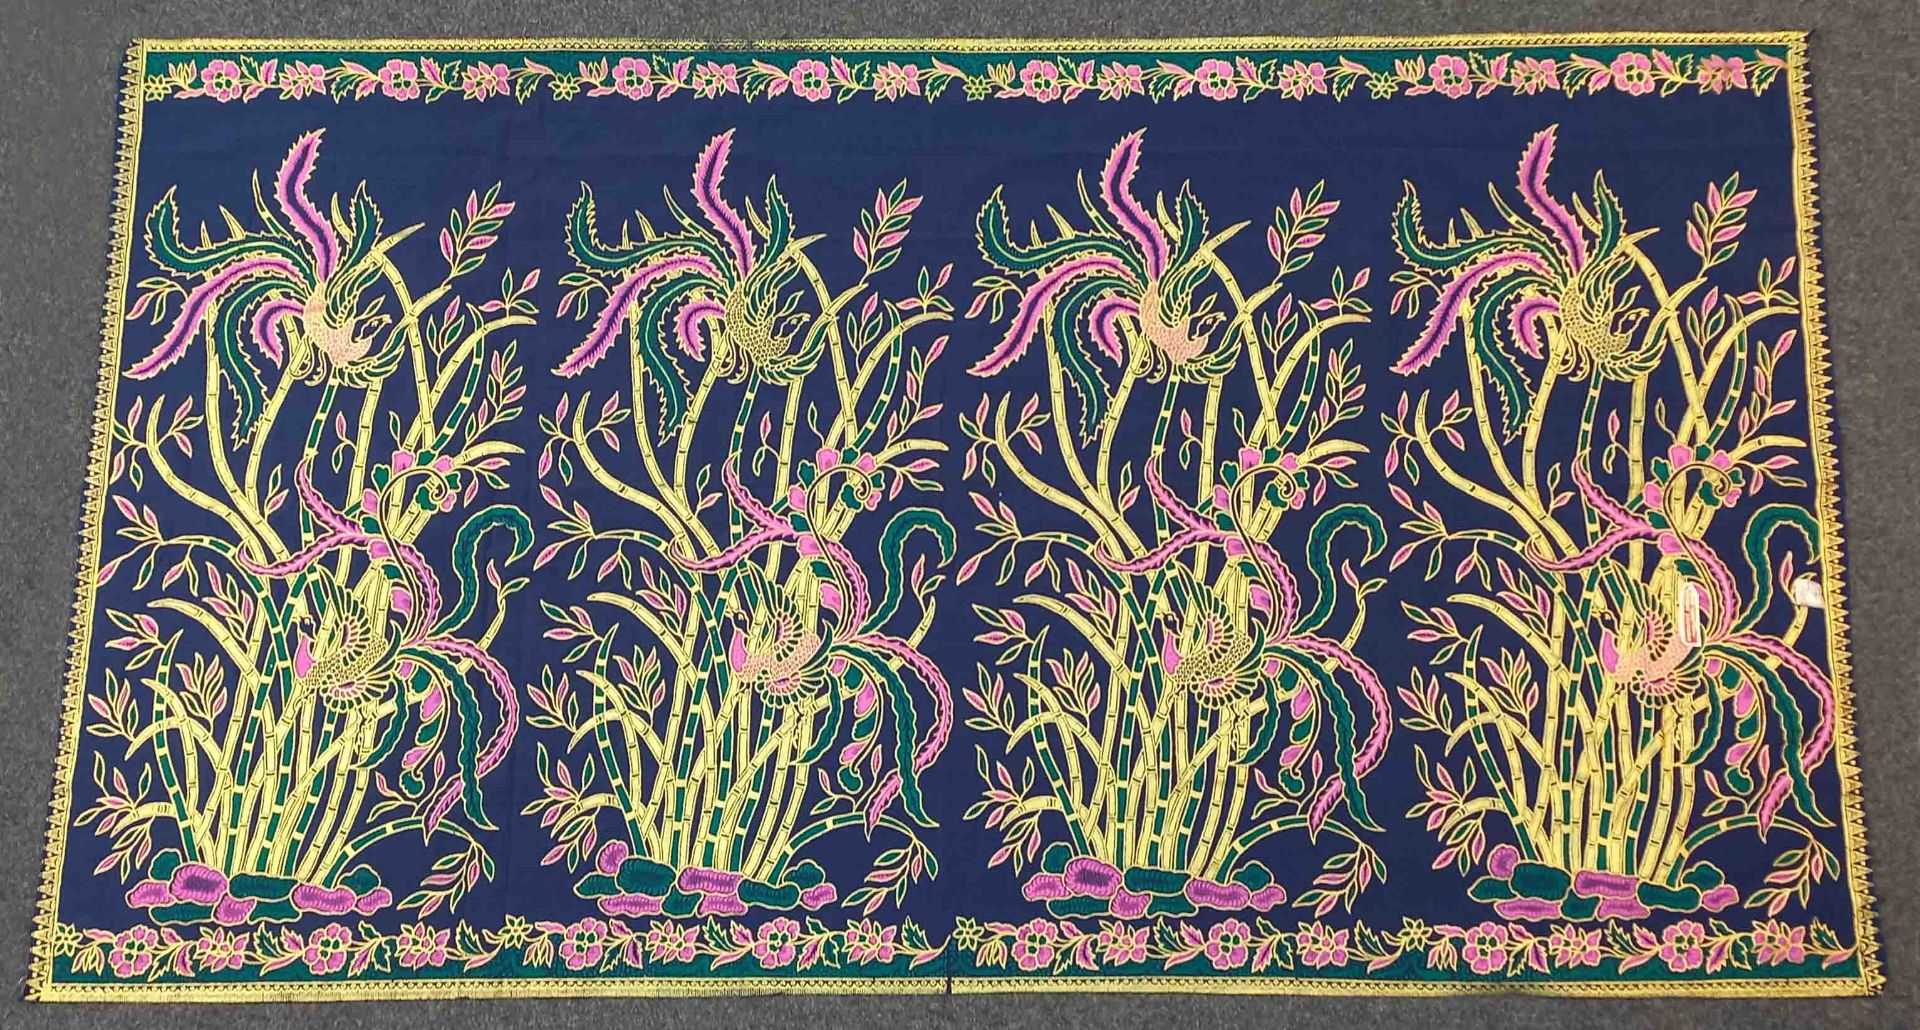 4 x Indonesischer Batik Stoff, Handdruck. - Image 2 of 10